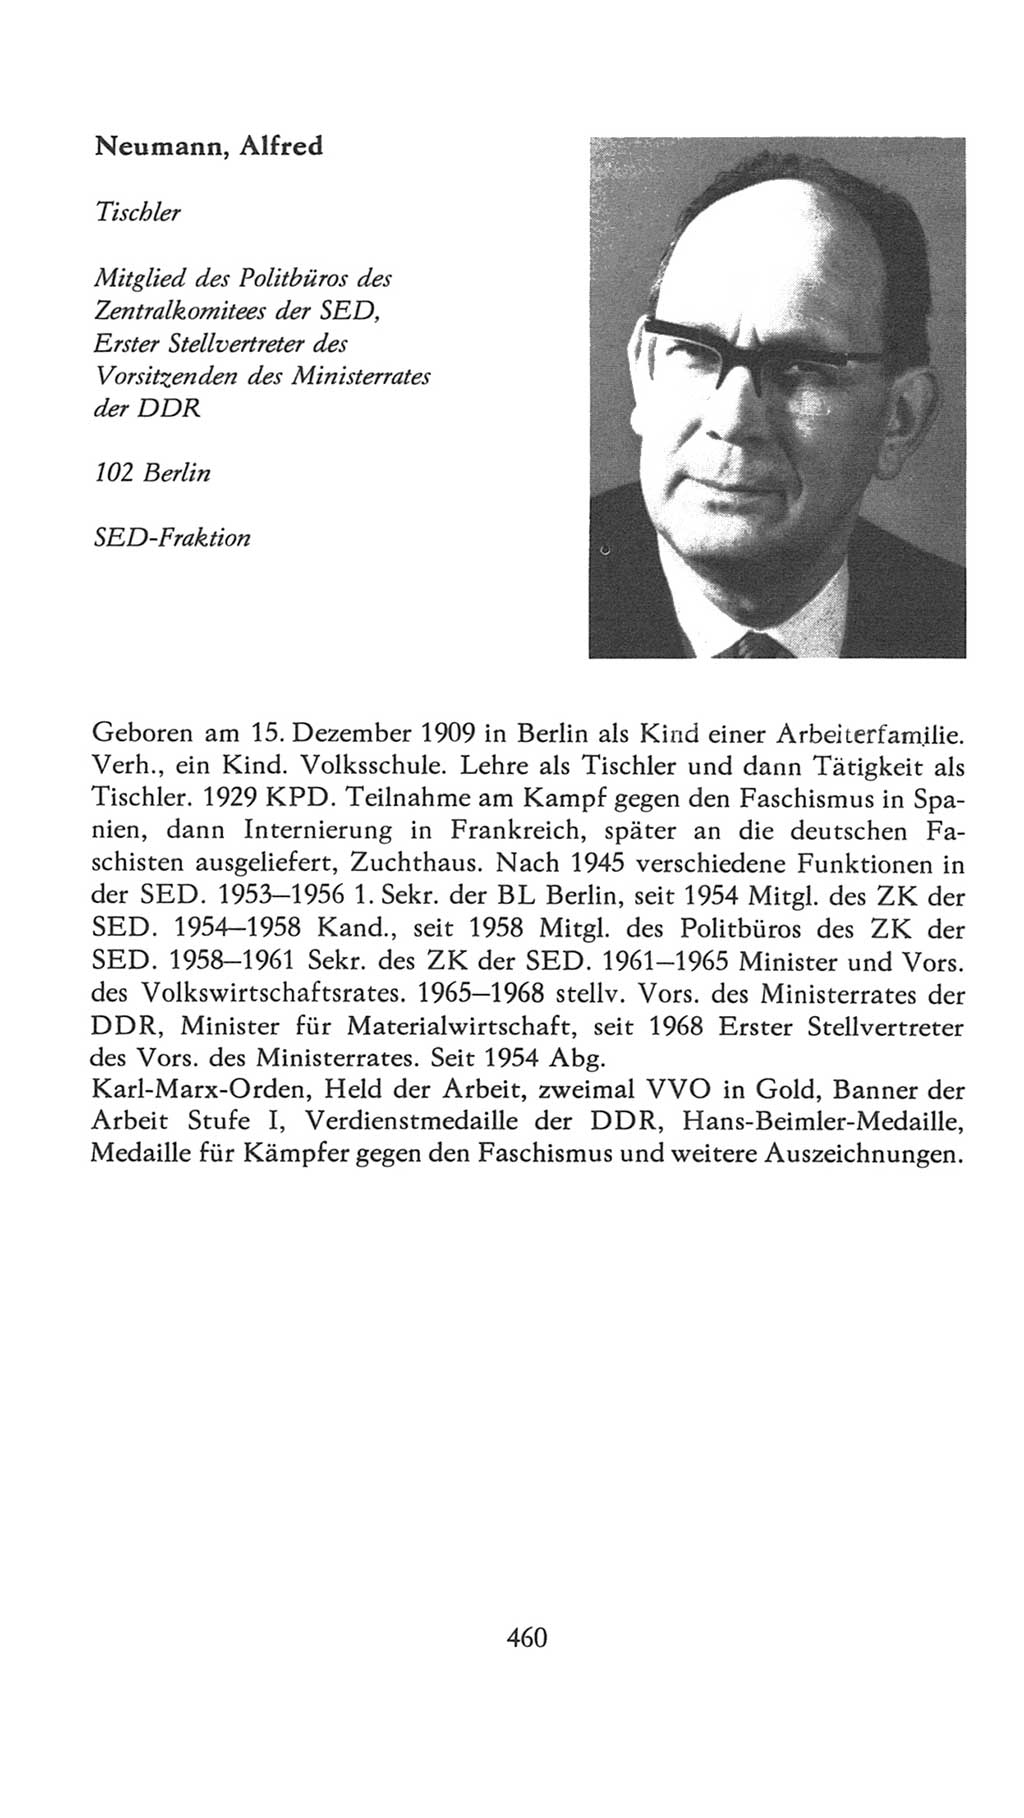 Volkskammer (VK) der Deutschen Demokratischen Republik (DDR), 7. Wahlperiode 1976-1981, Seite 460 (VK. DDR 7. WP. 1976-1981, S. 460)